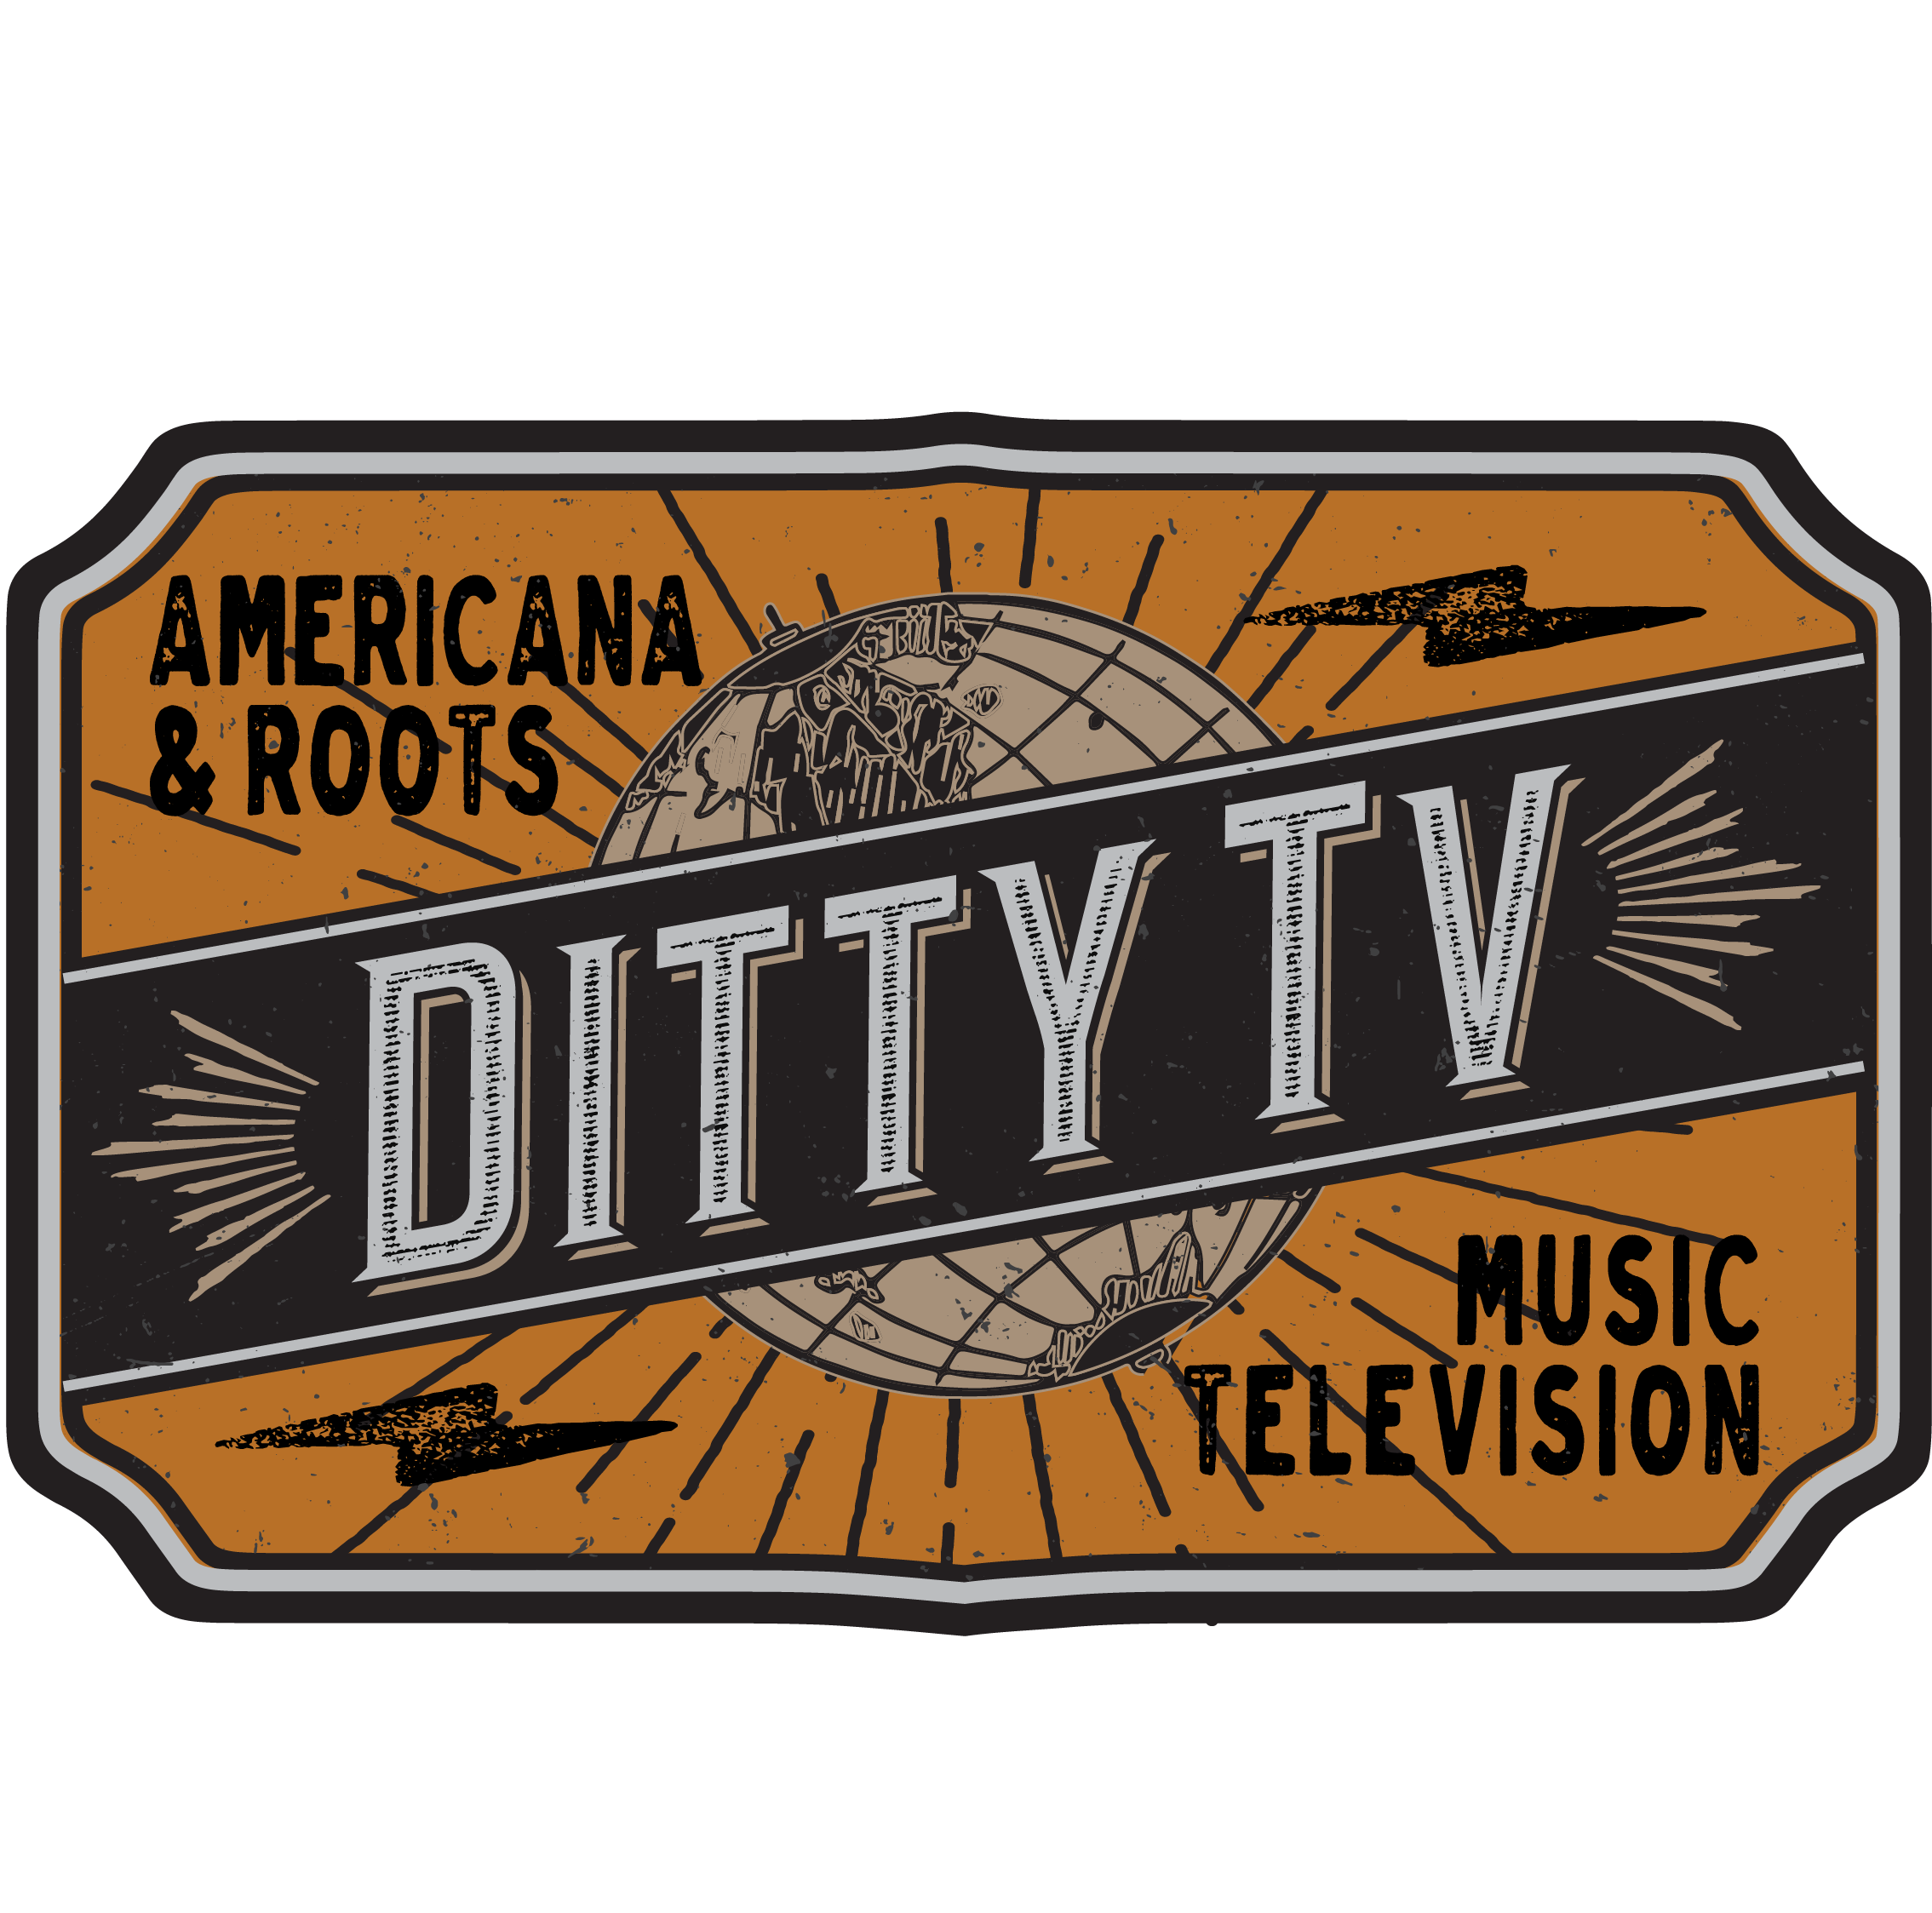 DittyTV logo